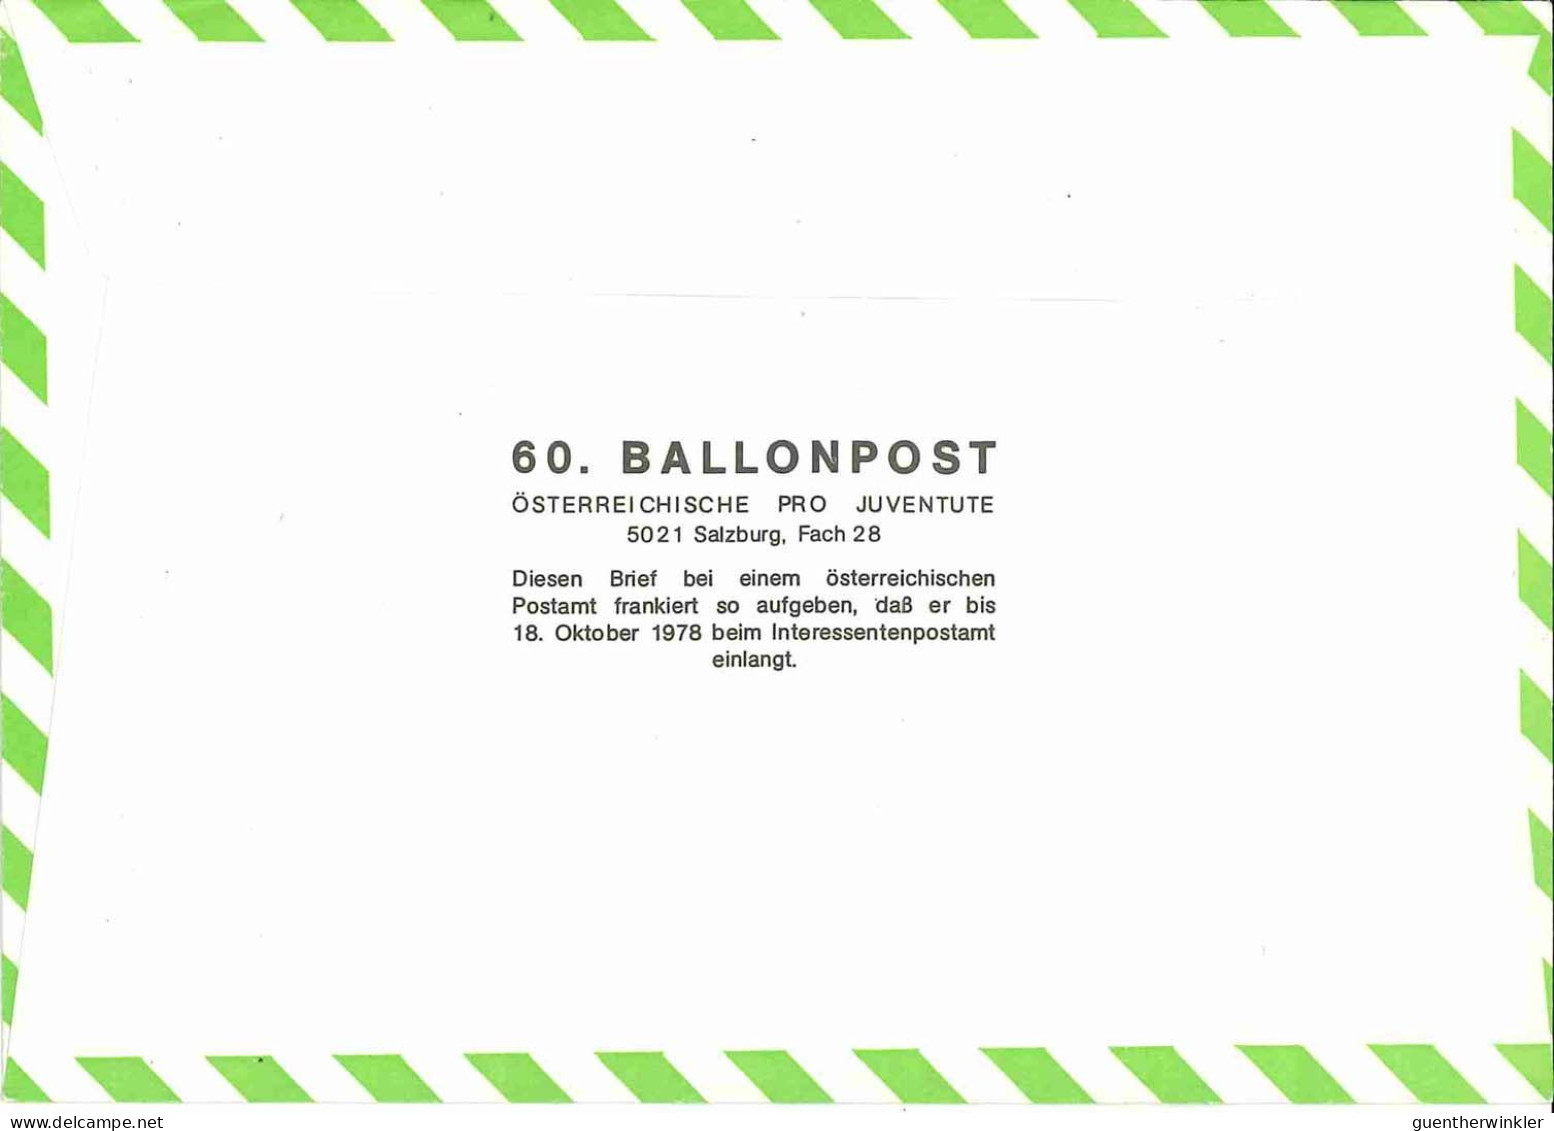 Regulärer Ballonpostflug Nr. 60a Der Pro Juventute [RBP60d] - Ballonpost